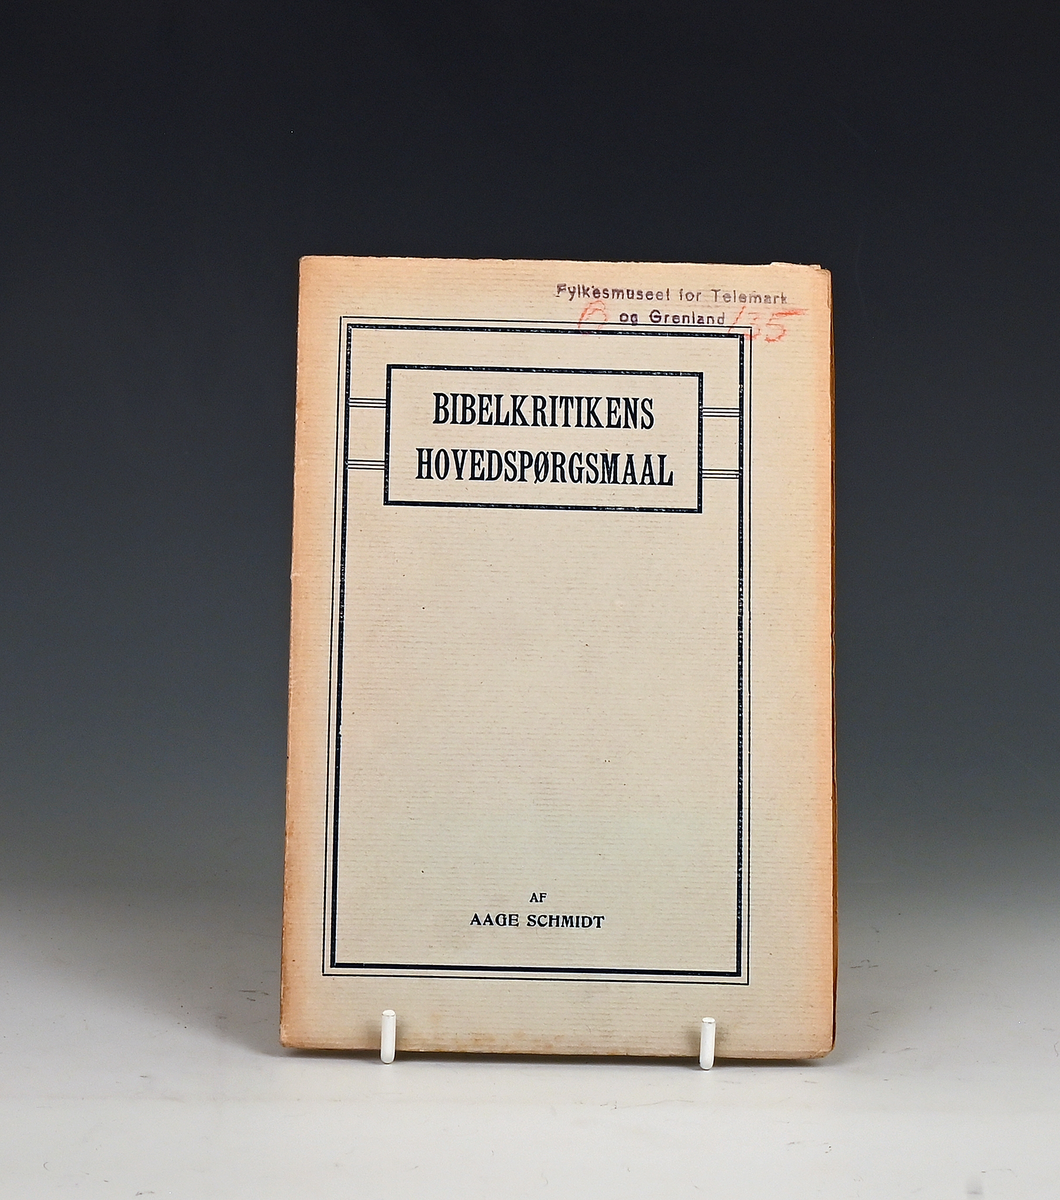 Schmith, Aage. Bibelkritikerens Hovedspørgsmaal. Minneapolis 1908.